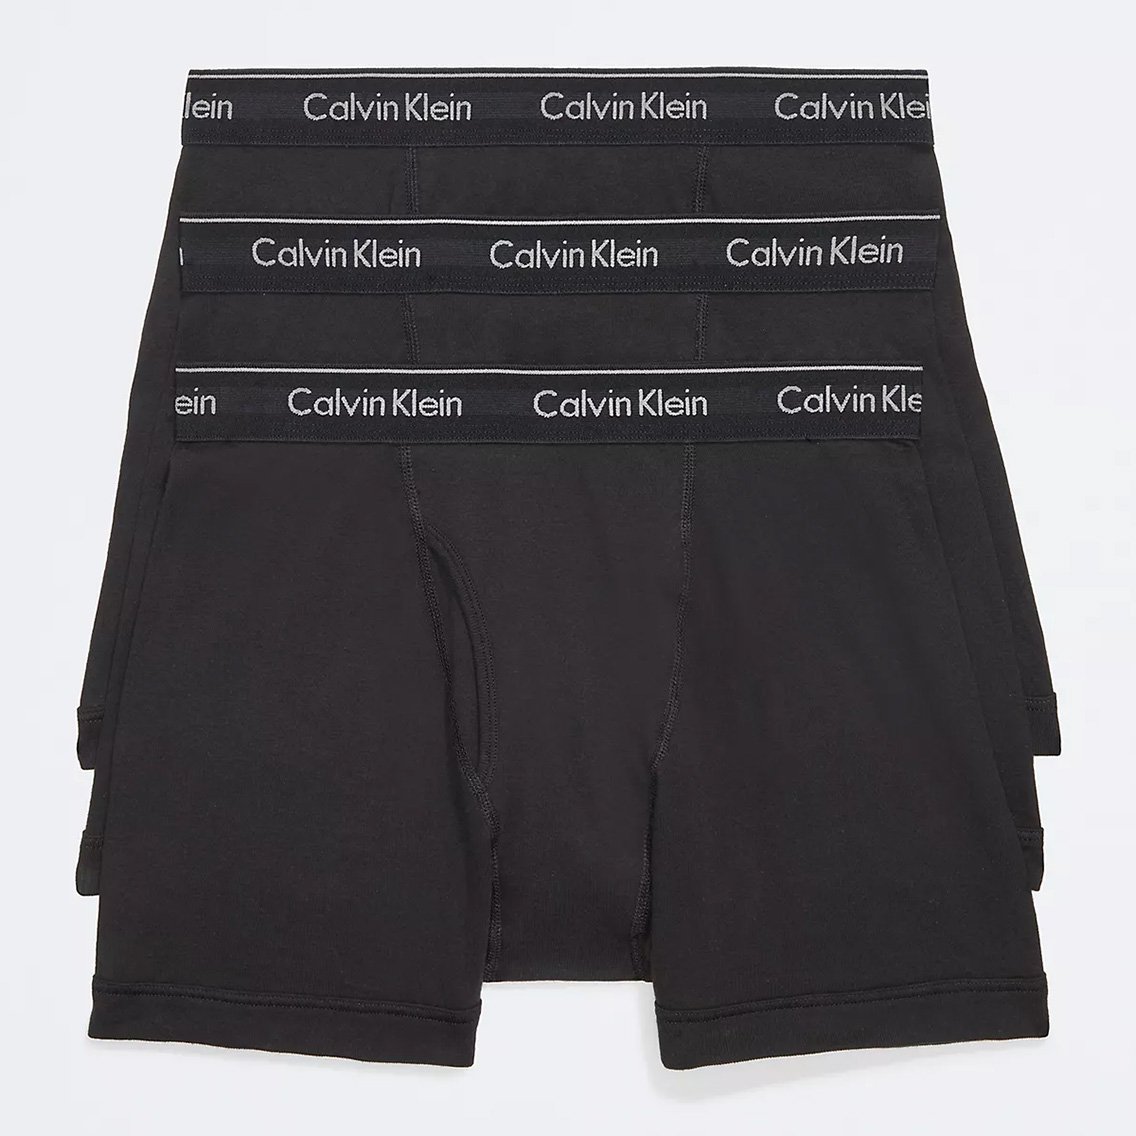 Calvin Klein(カルバンクライン)[NB4003-001]:ボクサーパンツ,男性下着